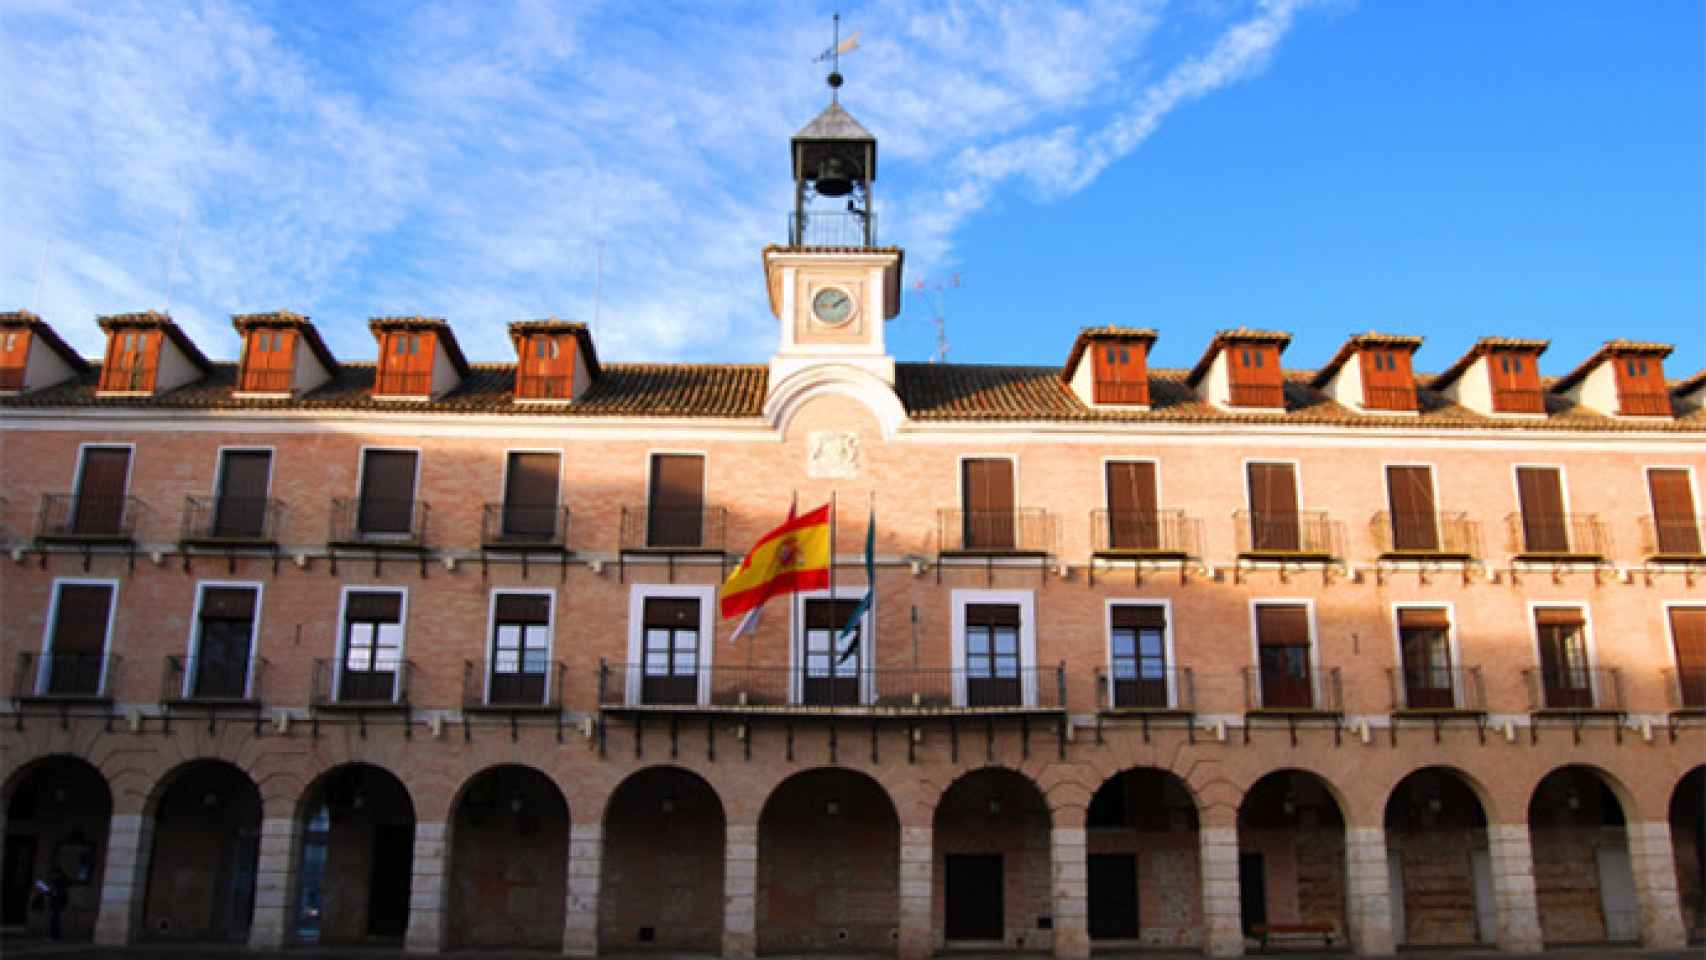 FOTO: Ayuntamiento de Ocaña